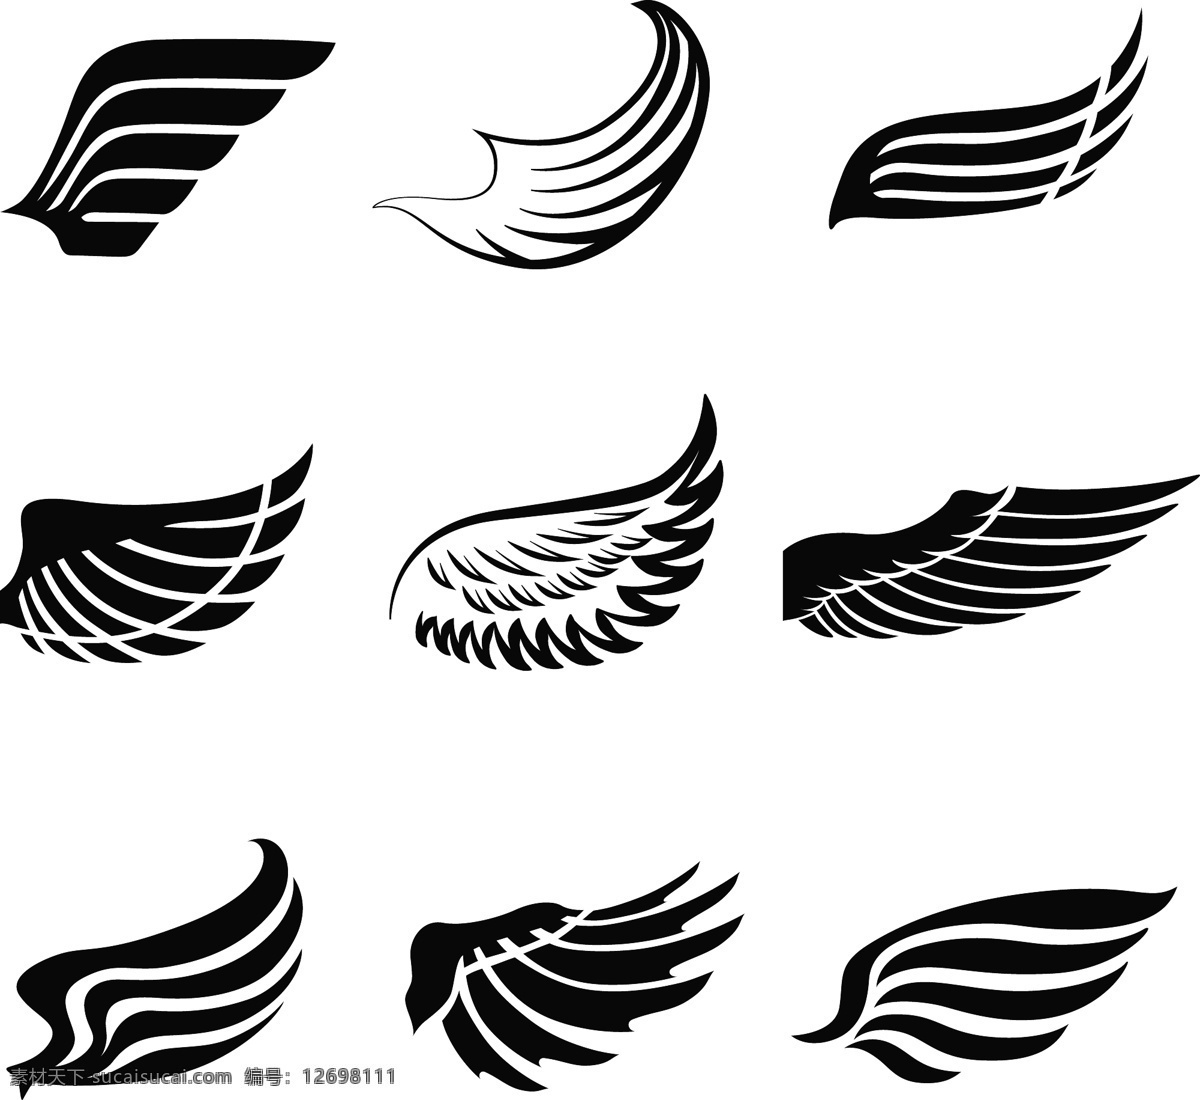 天使翅膀 翅膀 羽毛 翅膀设计 彩色 炫彩 翅膀素材 装饰翅膀 鸟类翅膀 鸟儿翅膀 纹身图案 手绘 矢量